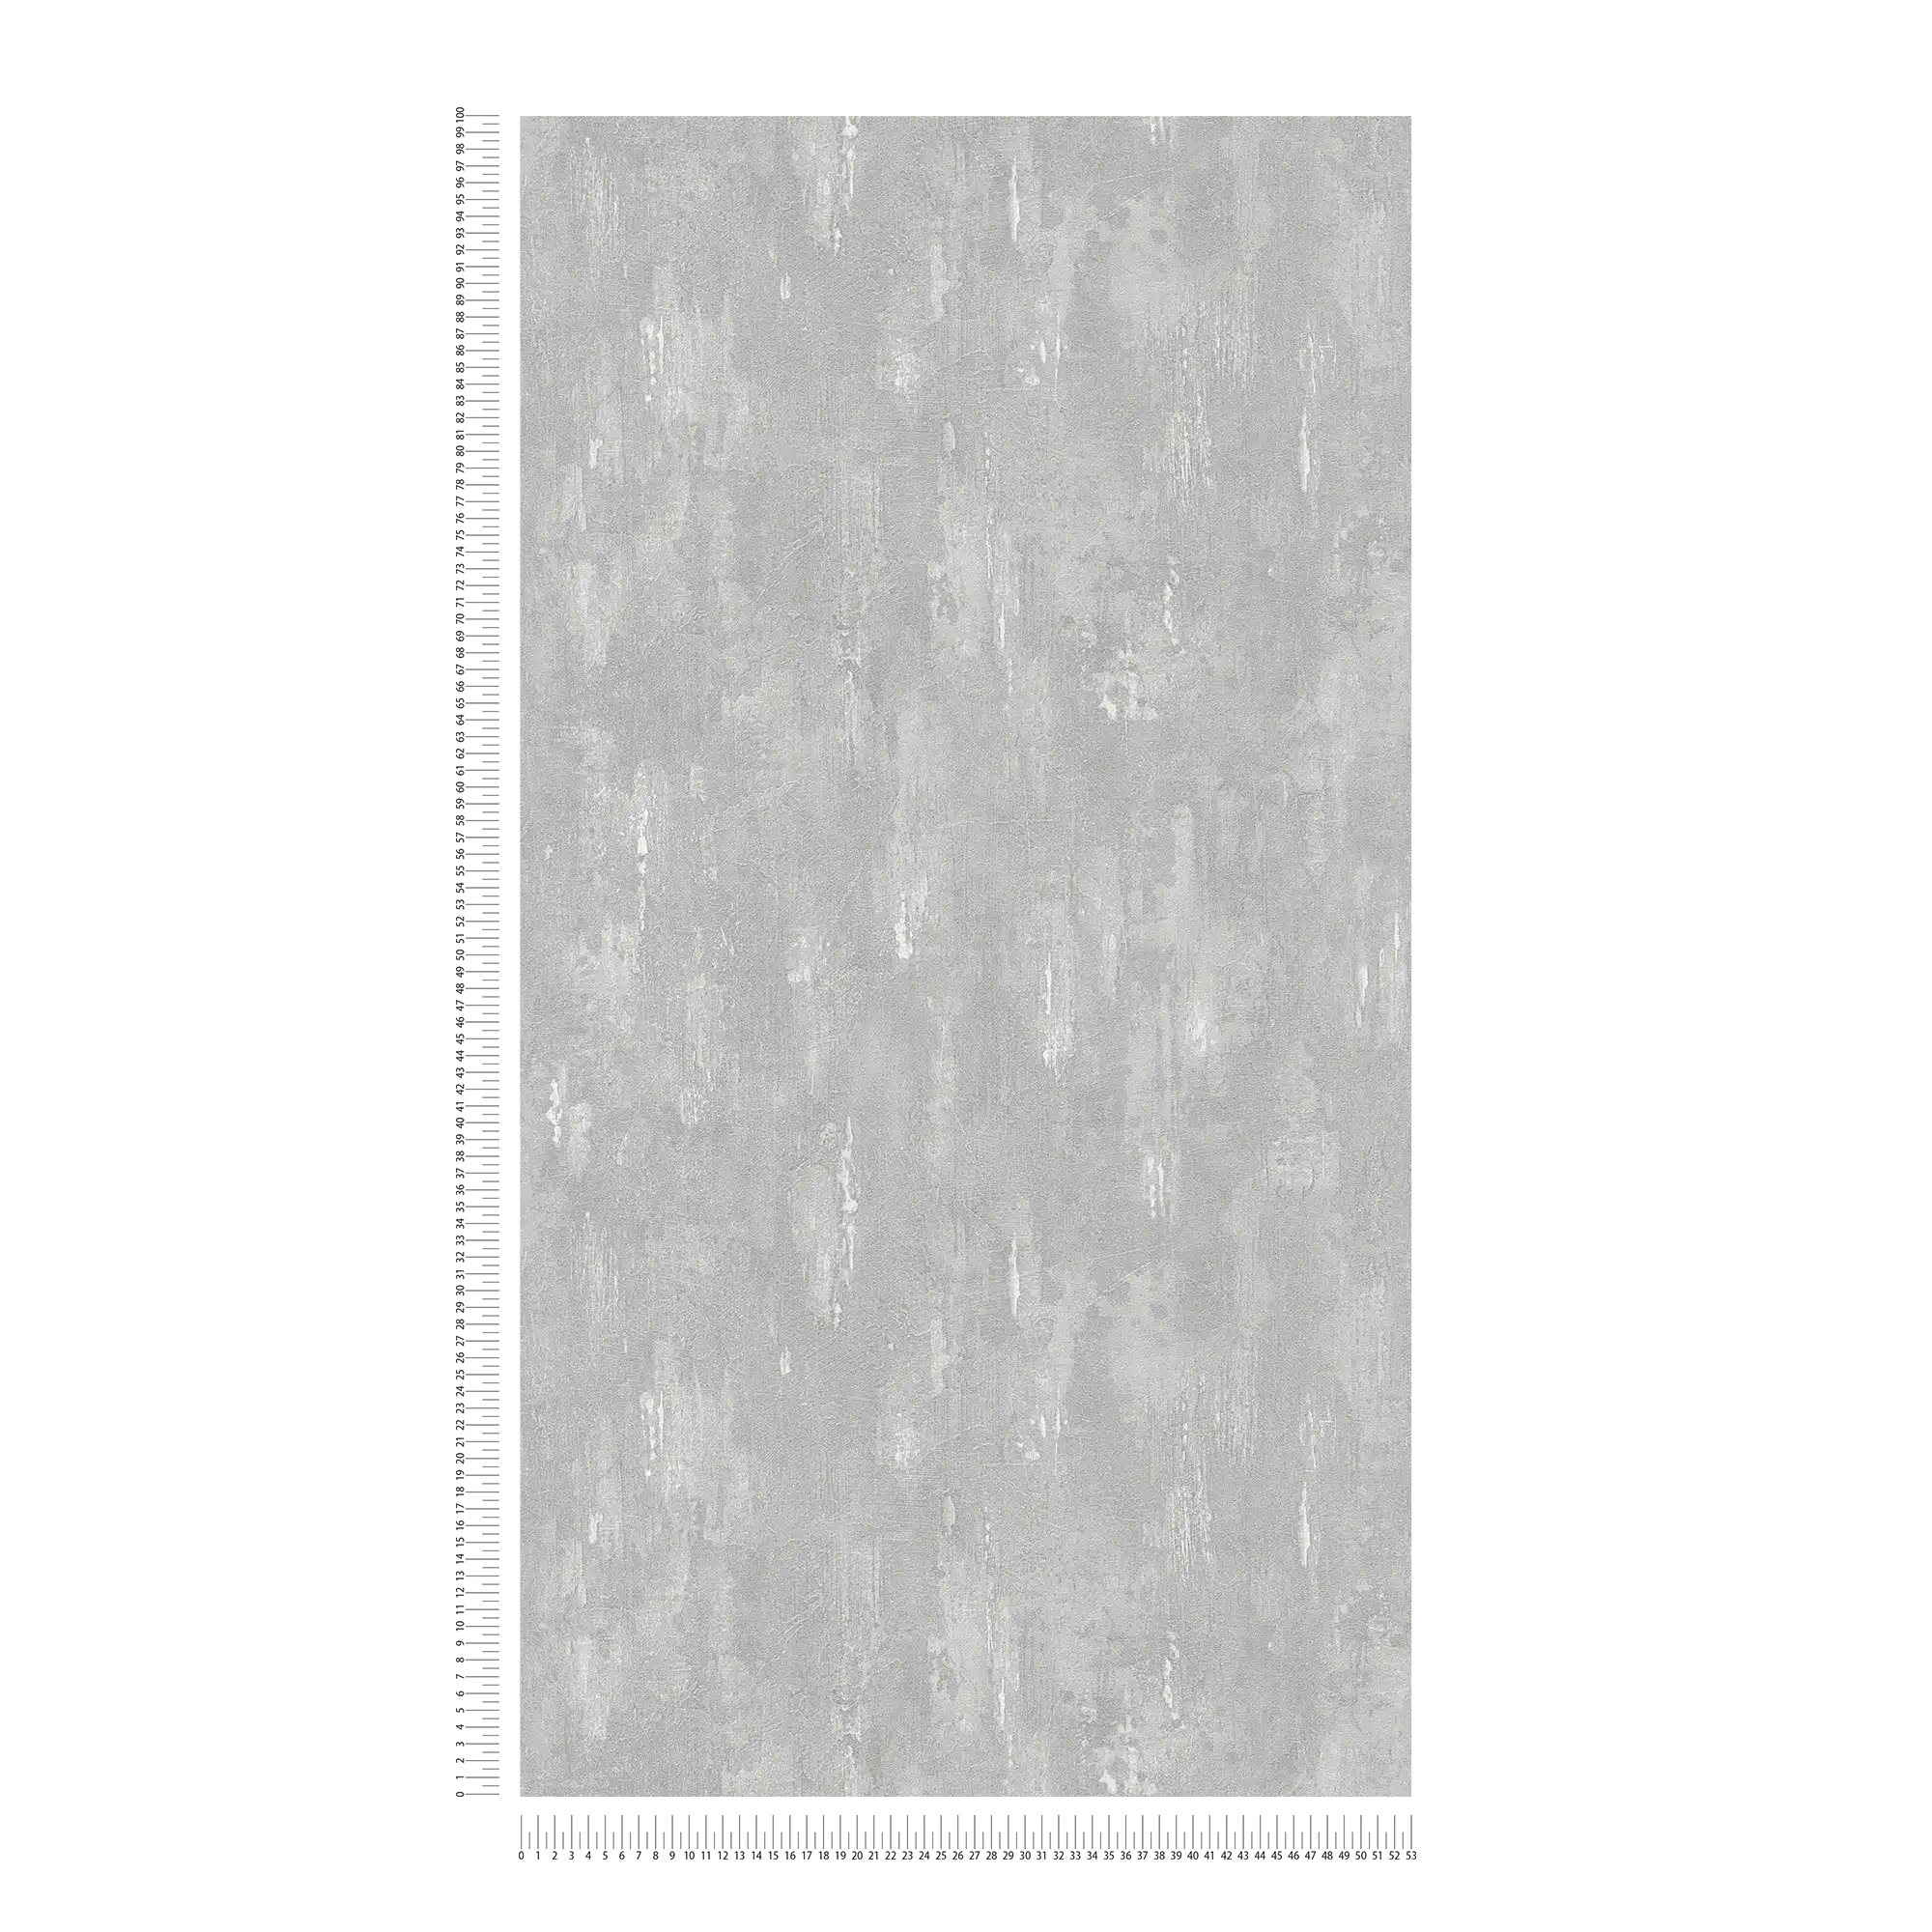             Carta da parati con struttura in gesso, aspetto concreto e sfumatura di colore - grigio
        